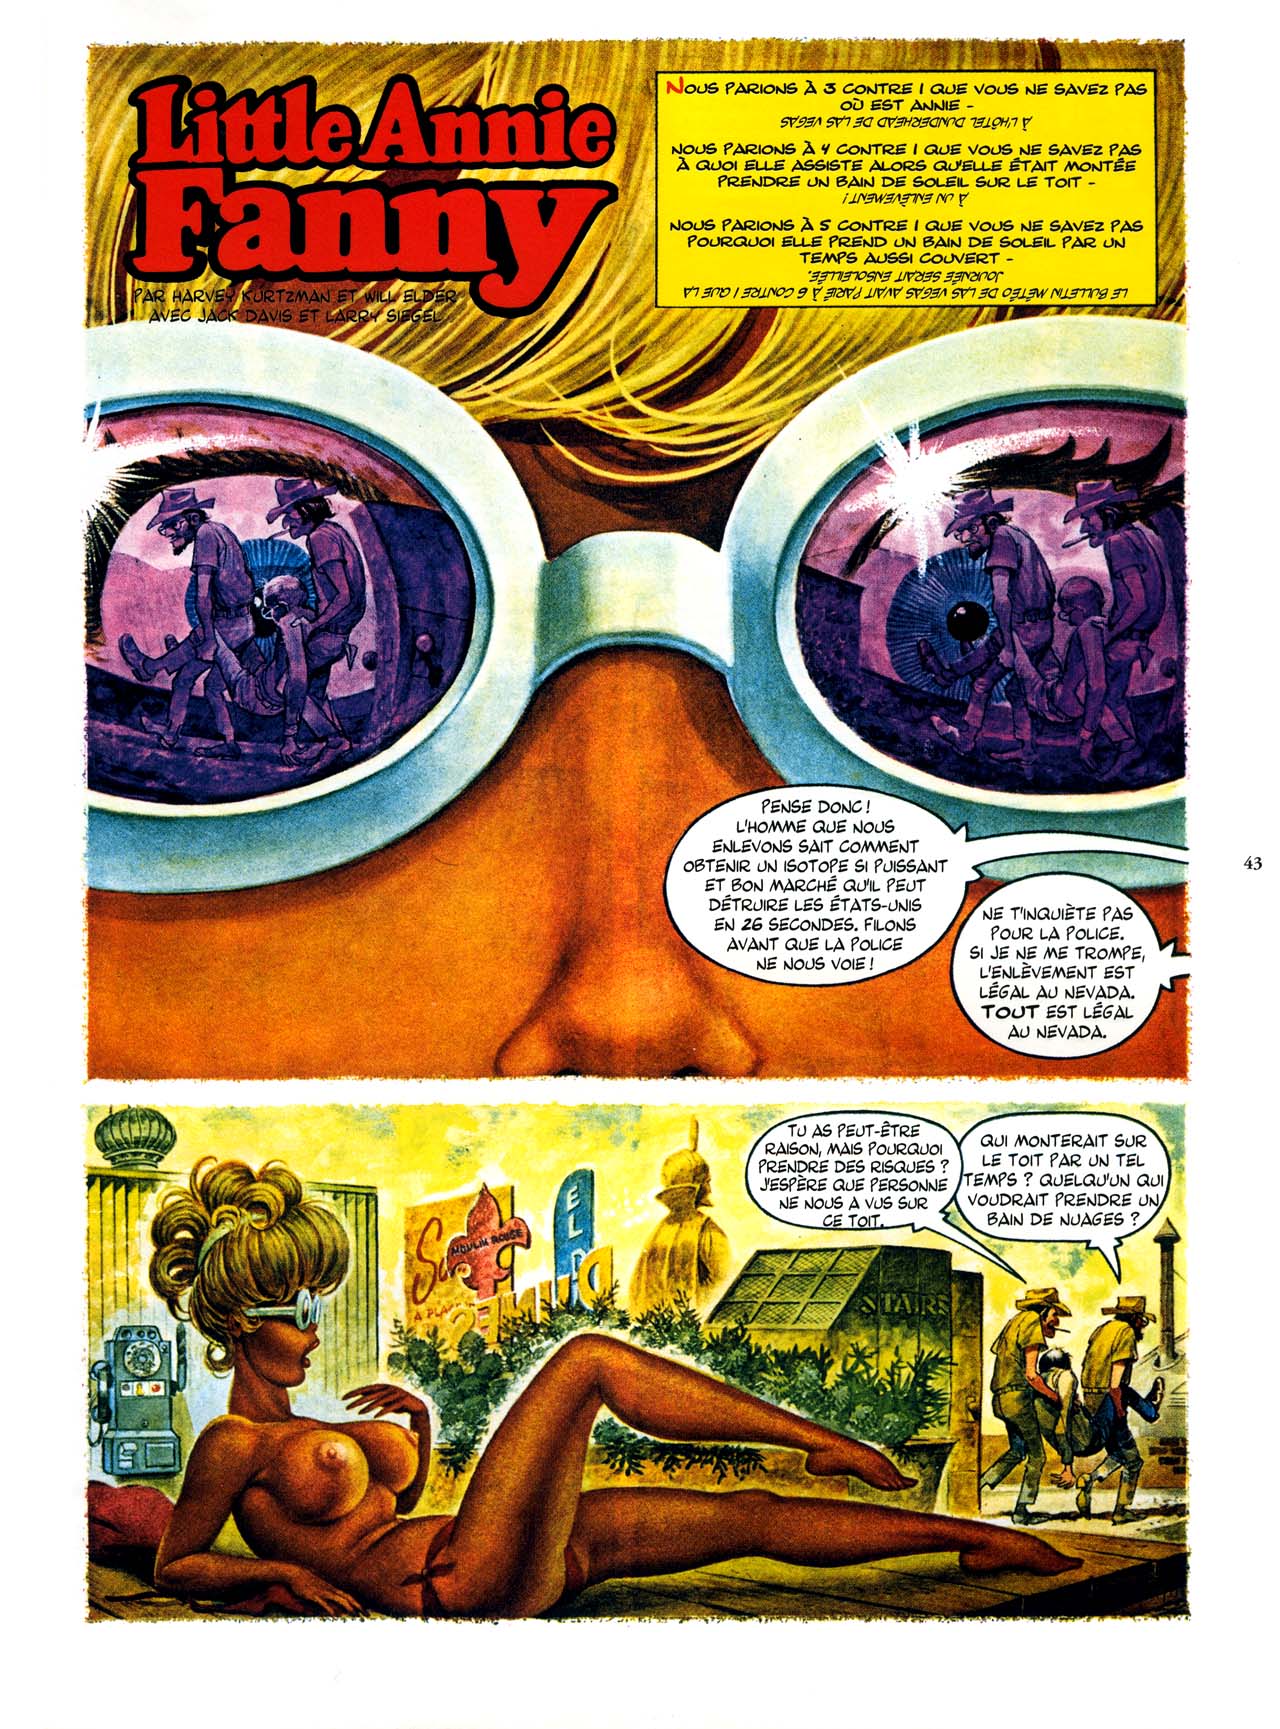 Playboys Little Annie Fanny Vol. 2 - 1965-1970 numero d'image 43